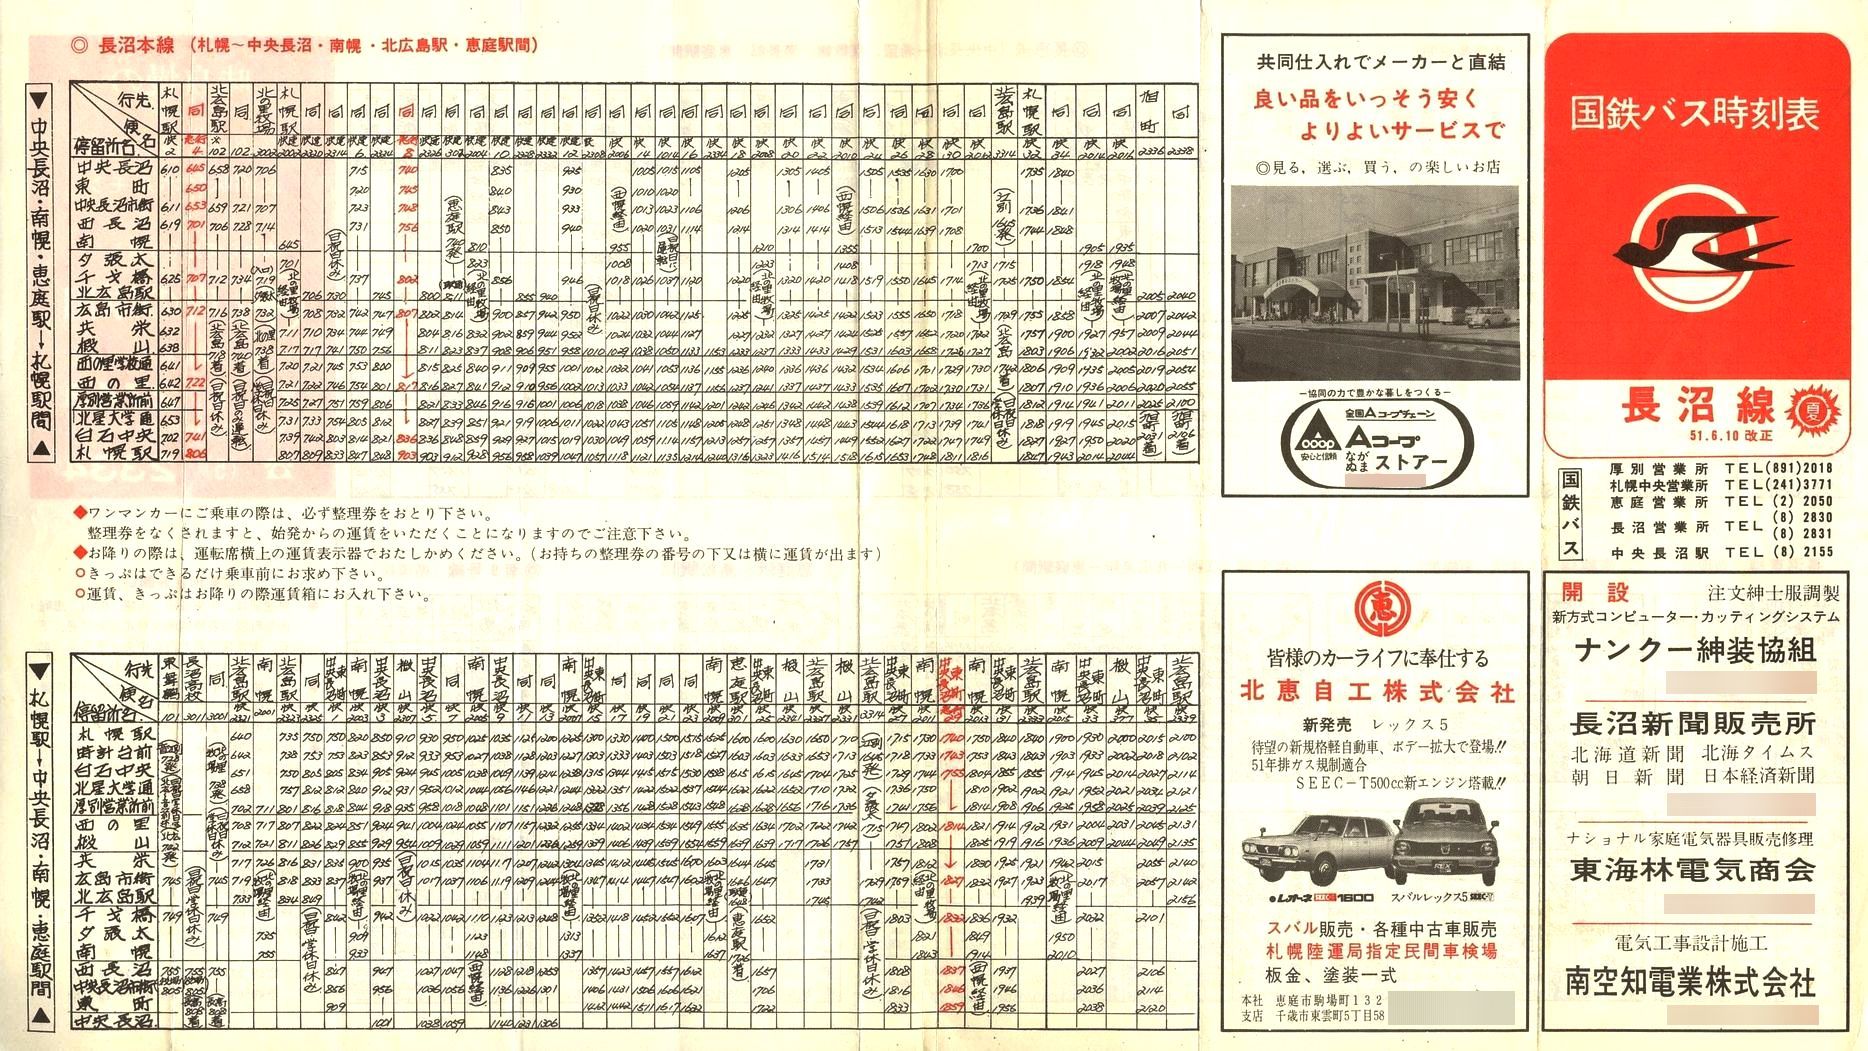 1976-06-10改正_国鉄バス_長沼線時刻表表面